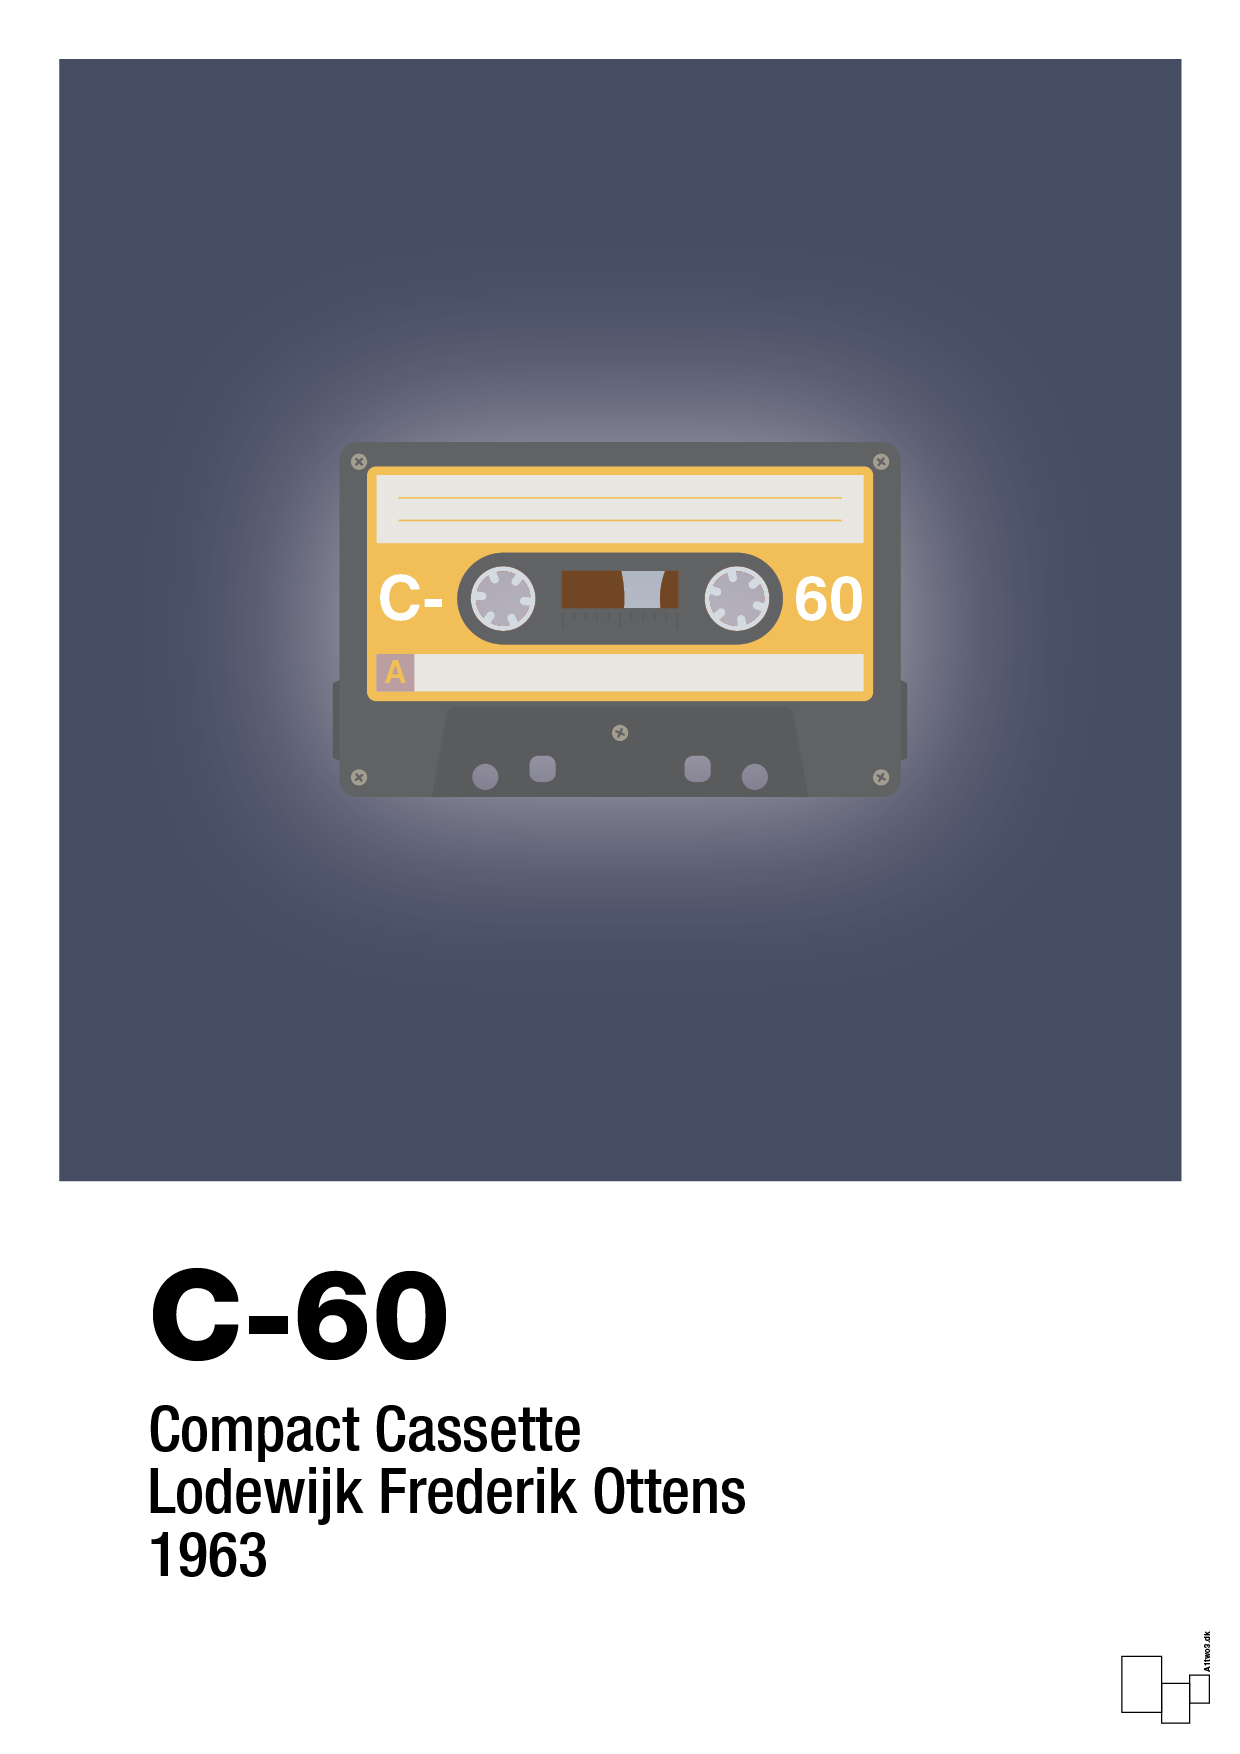 kassettebånd c-60 - Plakat med Grafik i Petrol